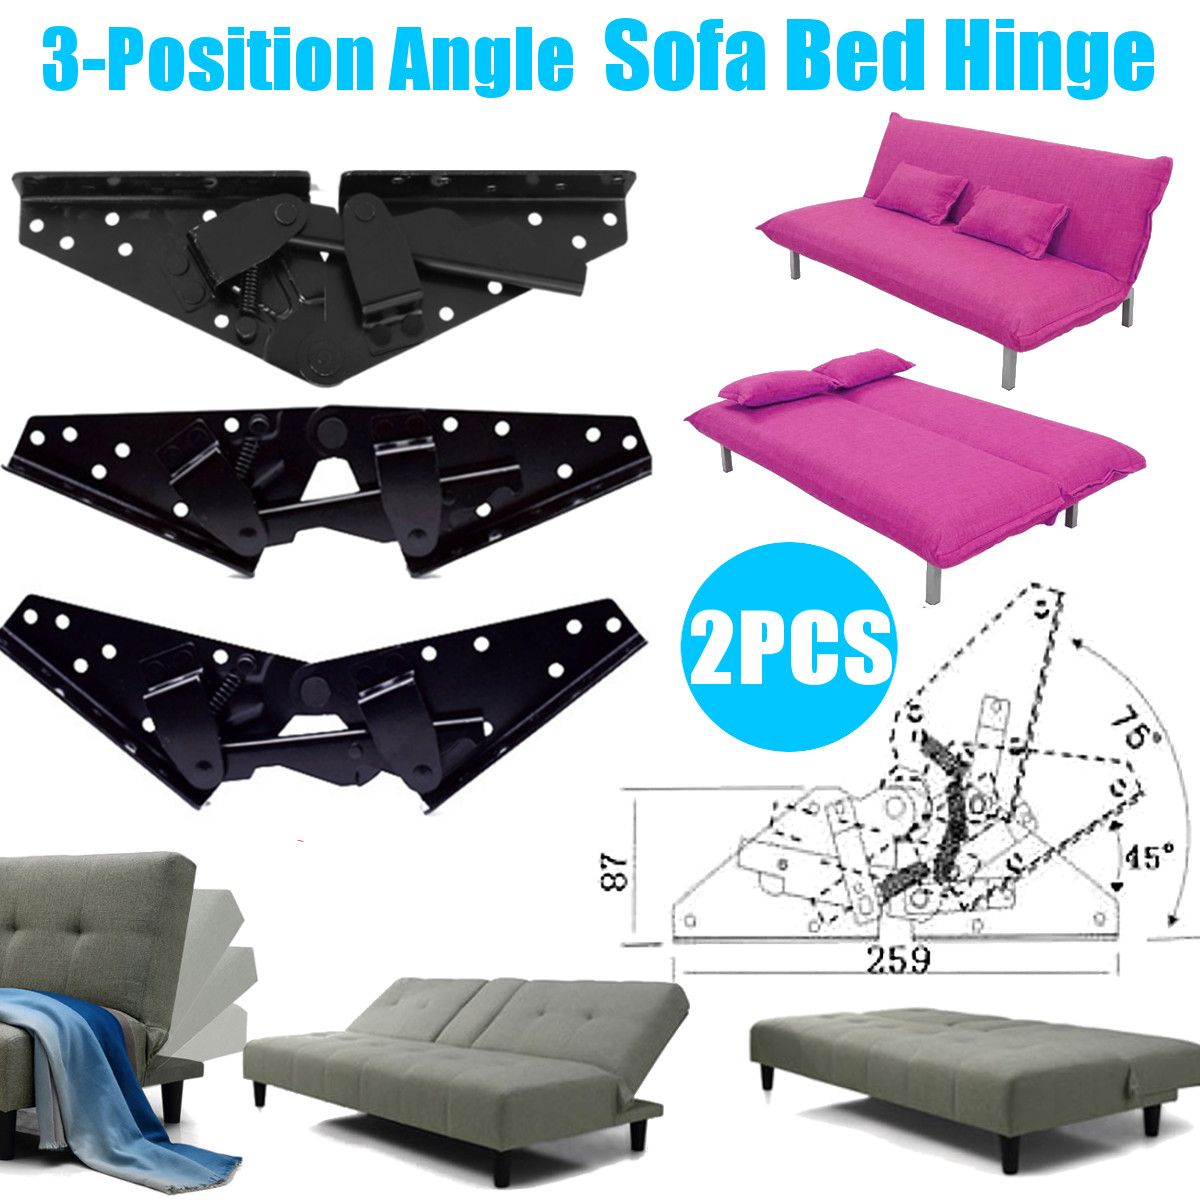 2Pcs-Sofa-Bed-Bedding-Furniture-Adjustable-3-Position-Angle-Mechanism-Hinge-Hardware-1366352